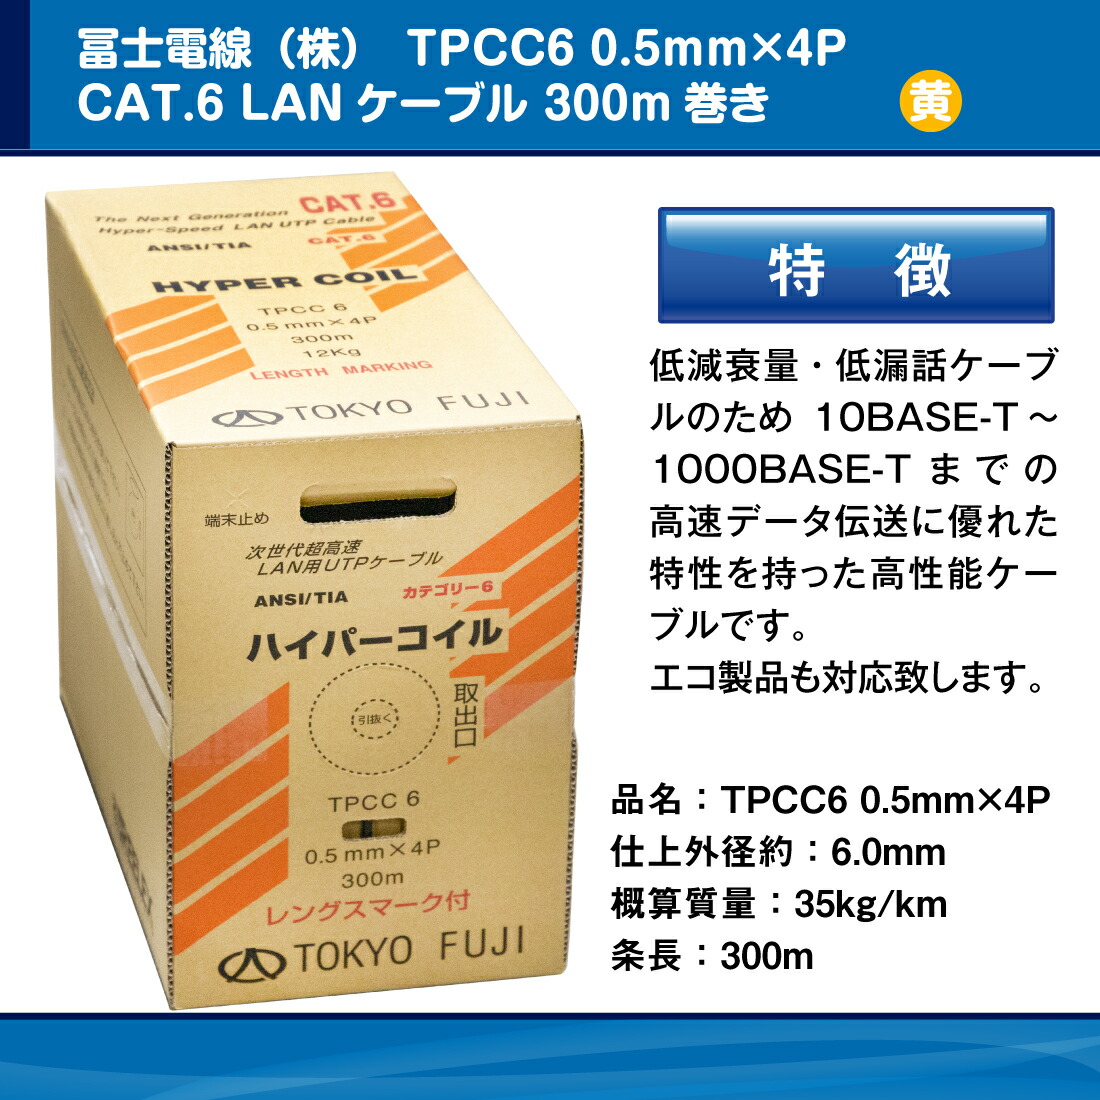 冨士電線 TPCC6 0.5mm×4P レングスマーク付 ハイパーコイル /イエロー